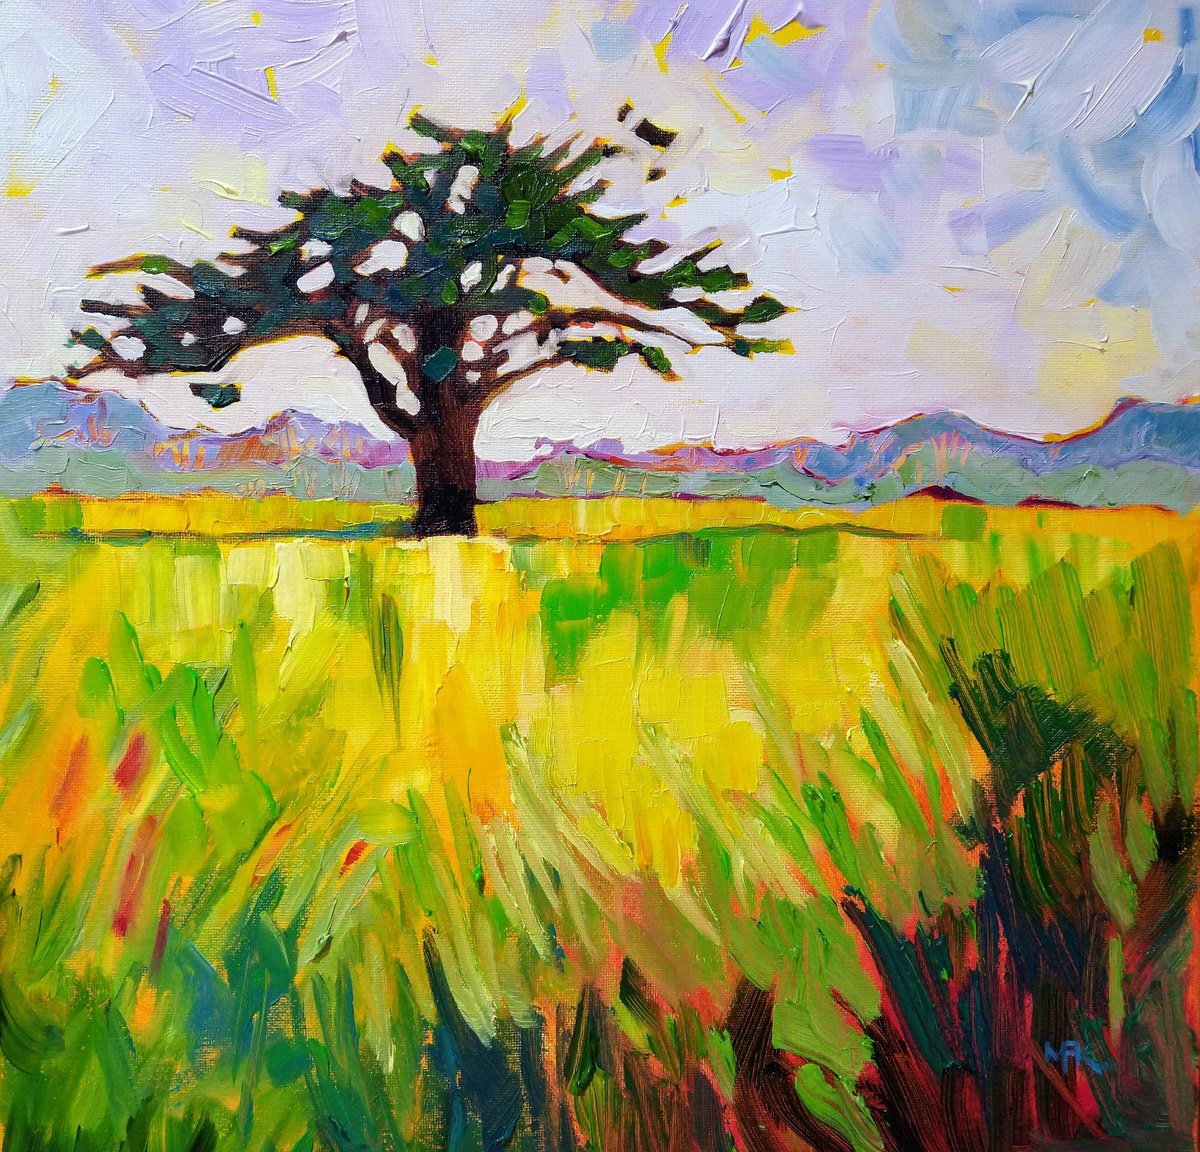 The Windswept Tree by Mary Kemp